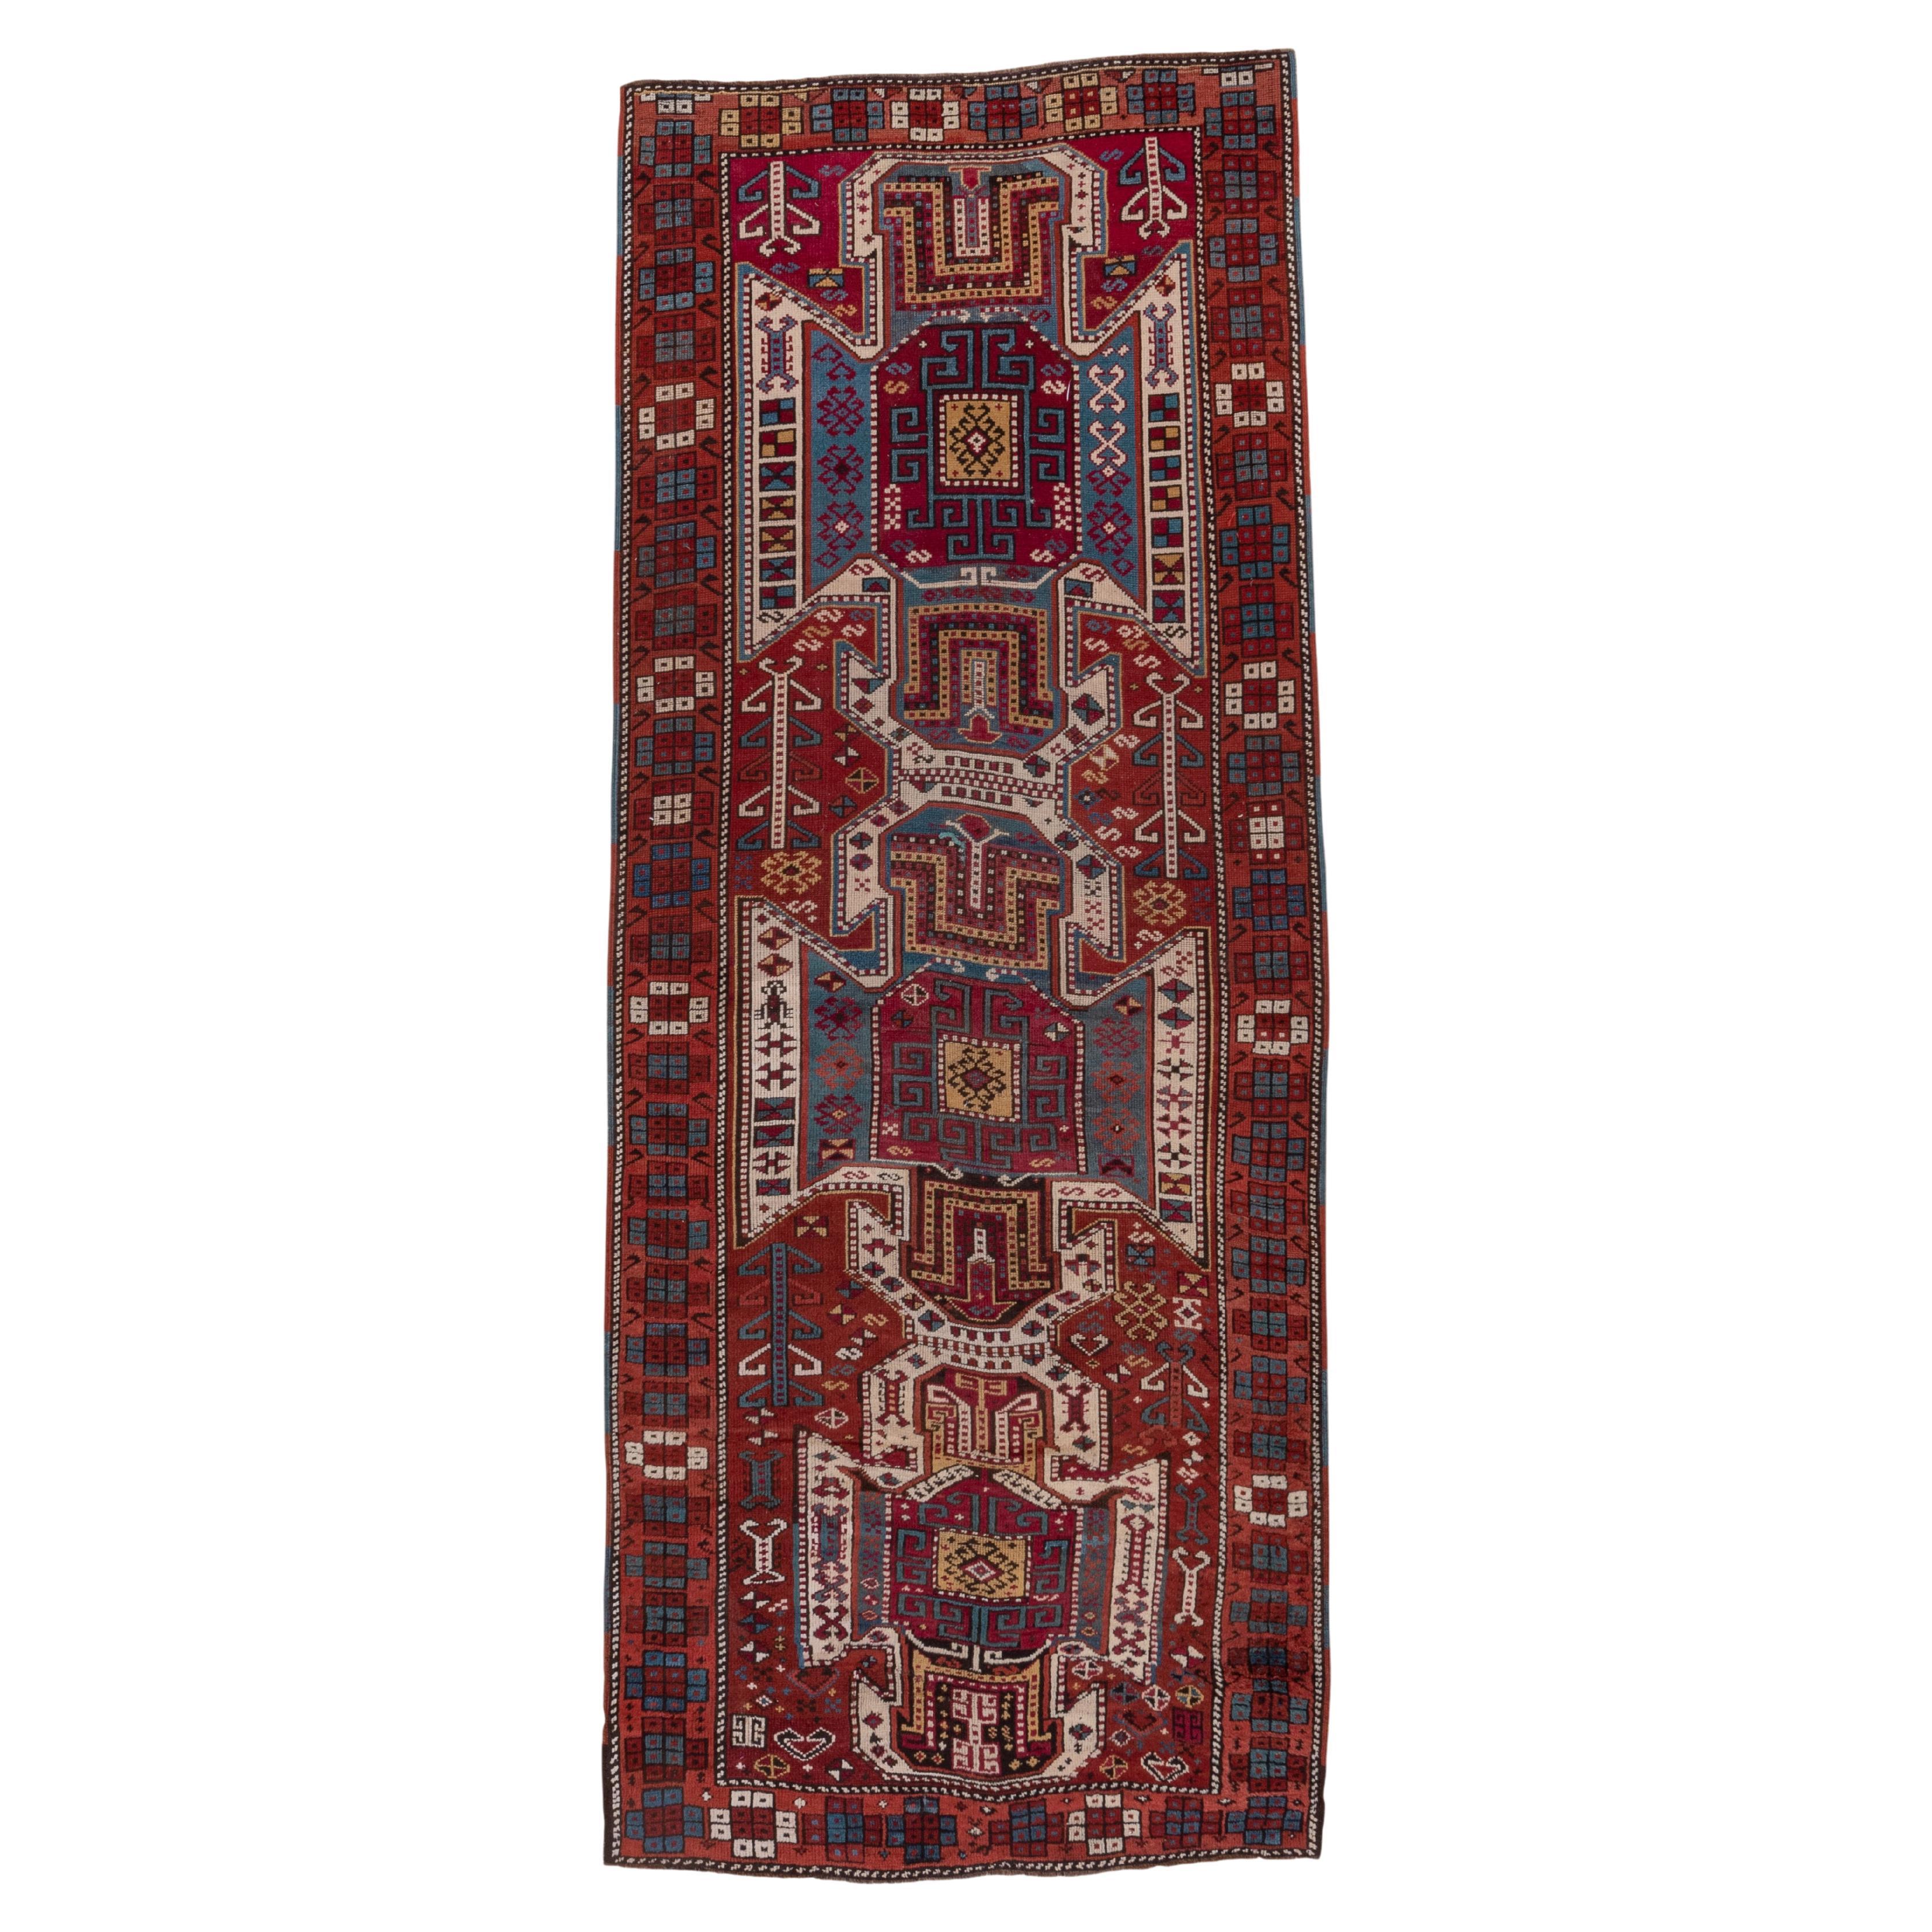 Tapis de couloir large de style Kazak caucasien ancien aux tons vifs, coloré et audacieux